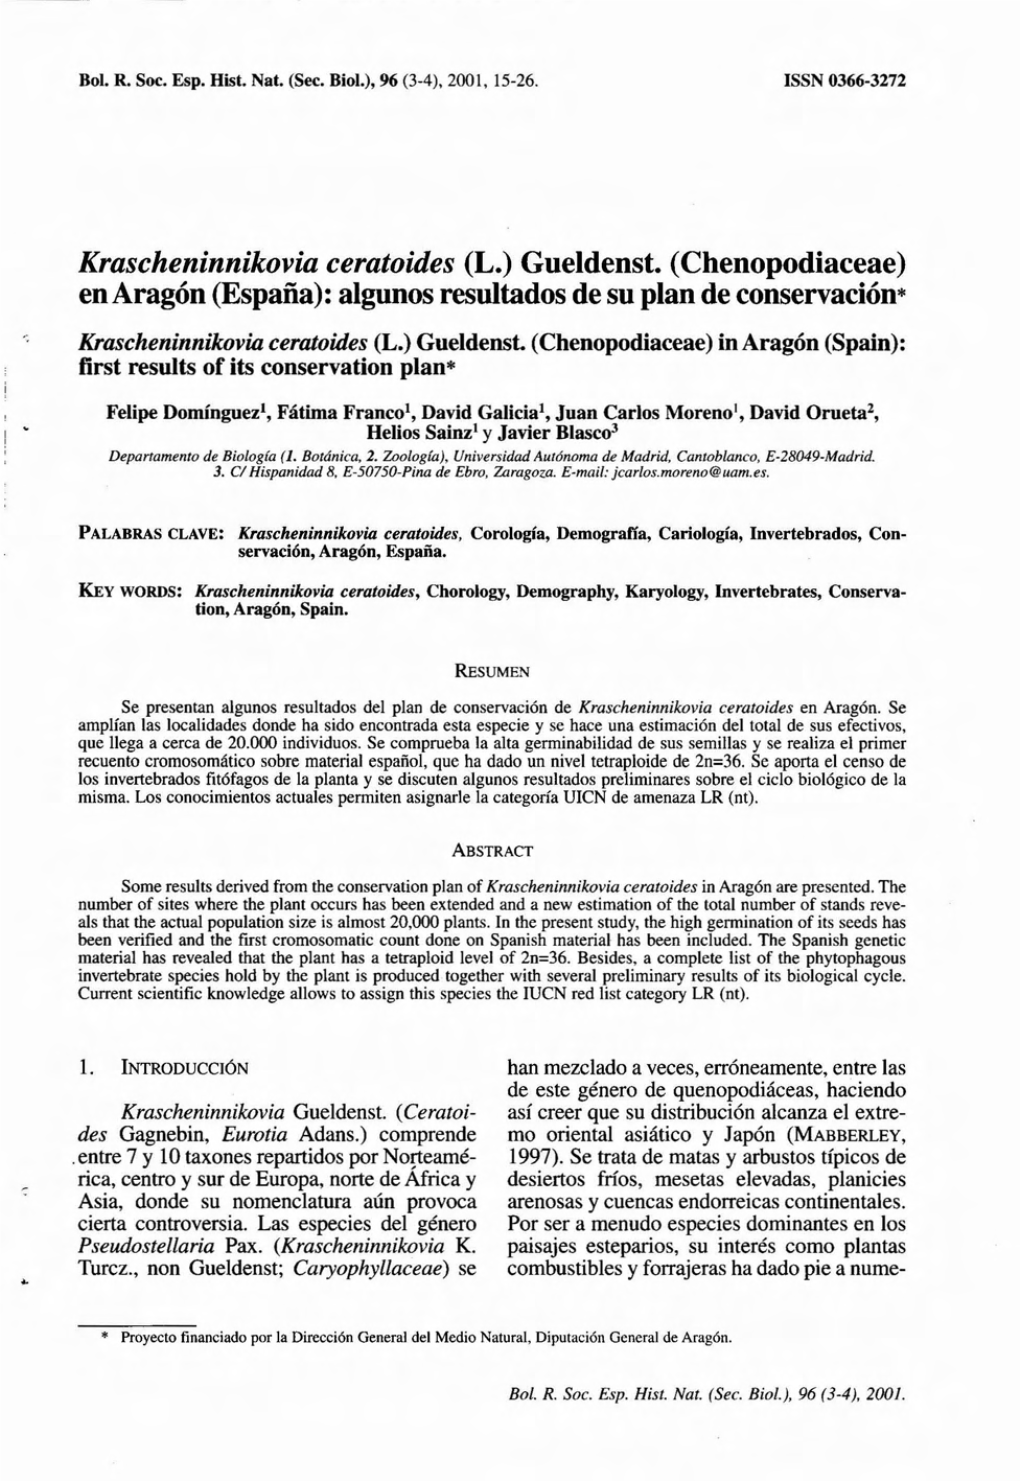 Krascheninnikovia Ceratoides (L.) Gueldenst. (Chenopodiaceae) Enaragón (España): Algunos Resultados De Su Plan De Conservación*